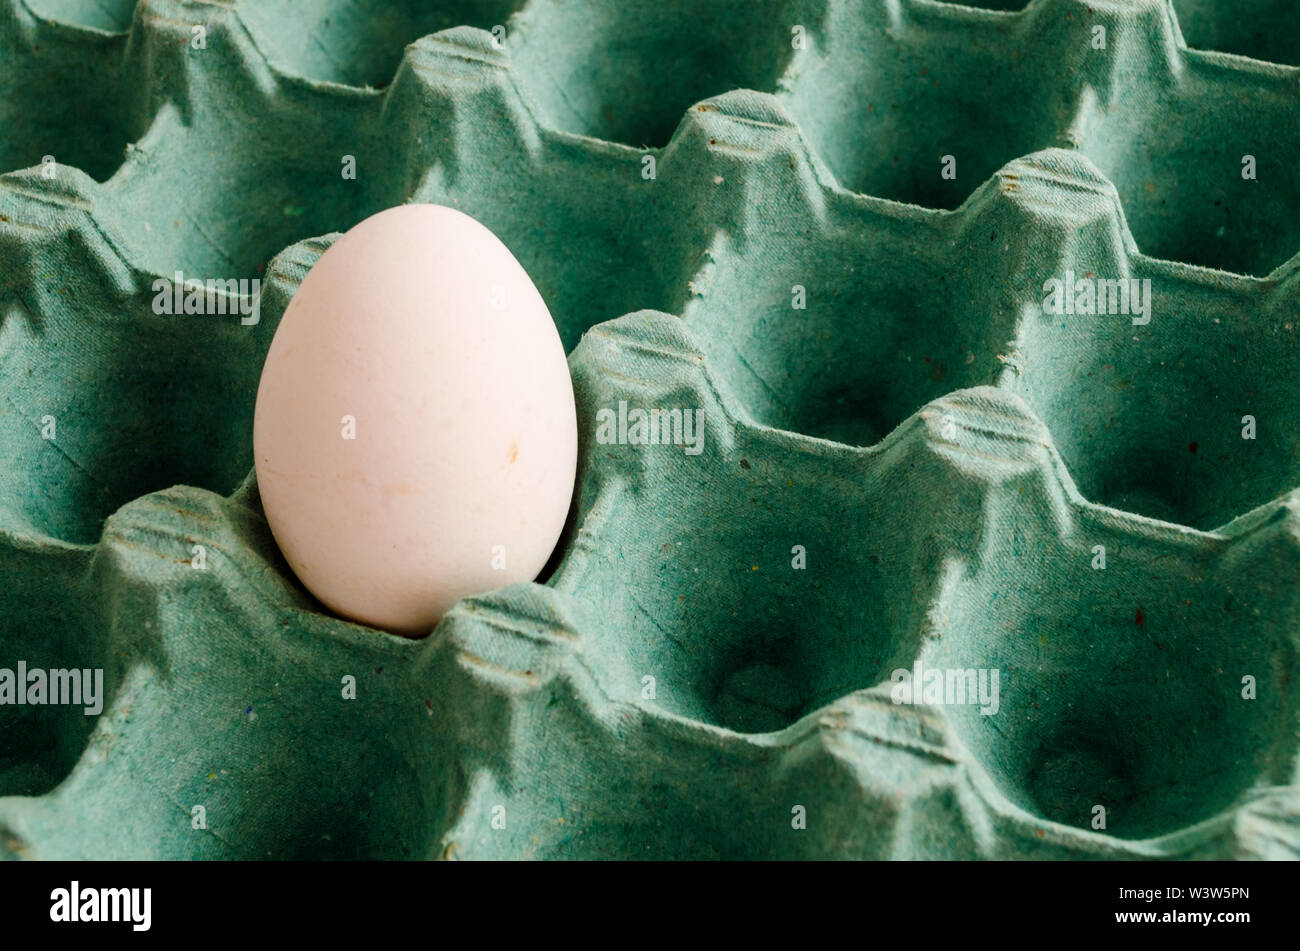 Un huevo blanco en un cartón de huevos verdes vacíos. Foto de stock